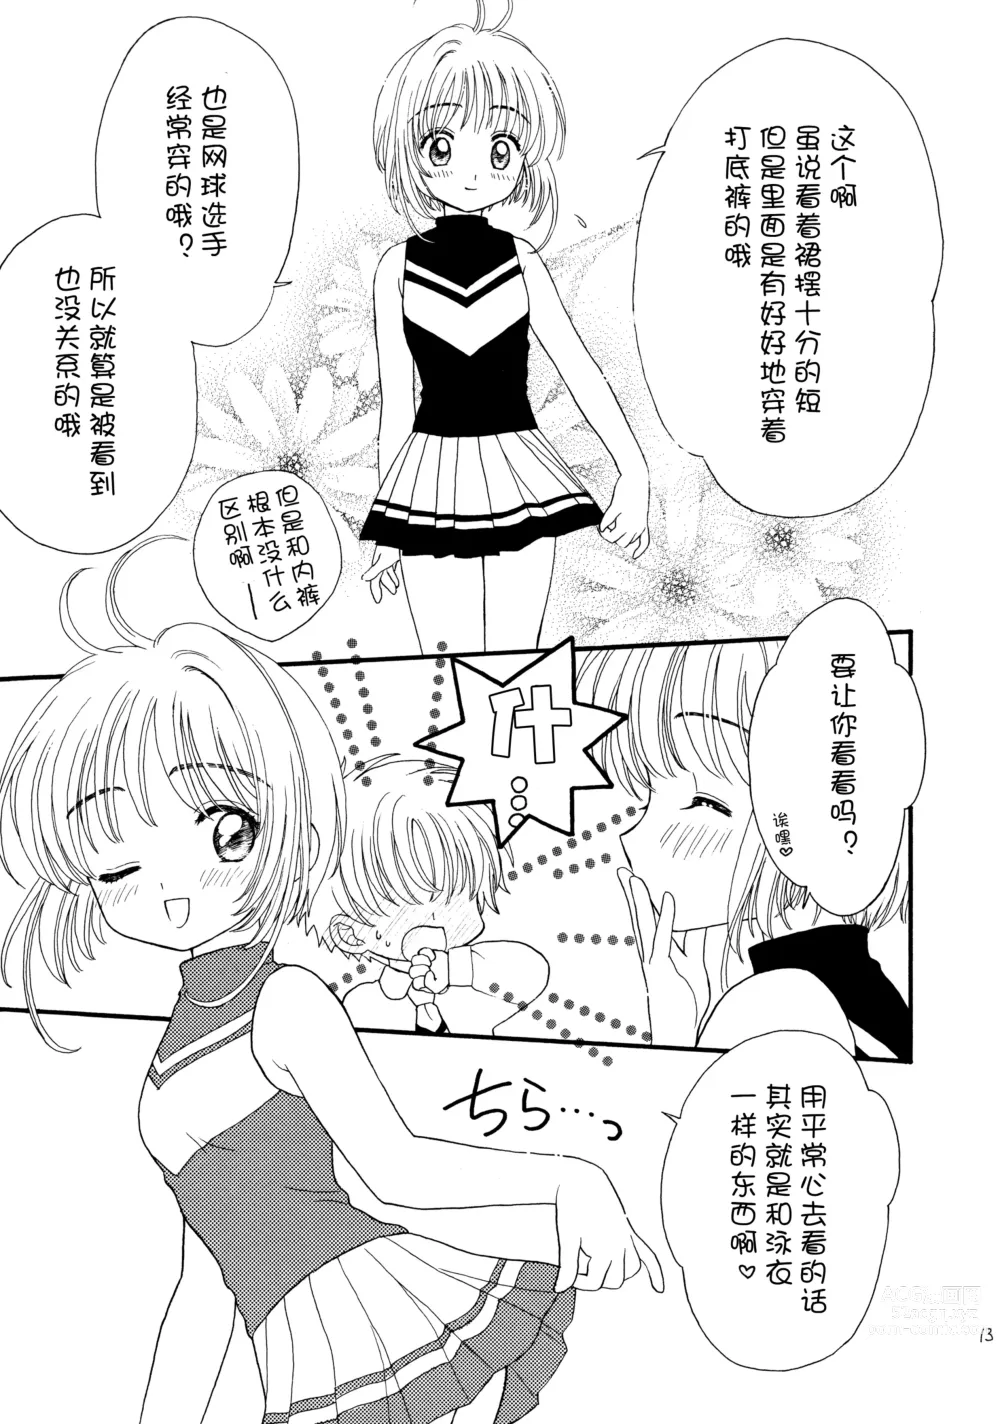 Page 13 of doujinshi Hitorijime